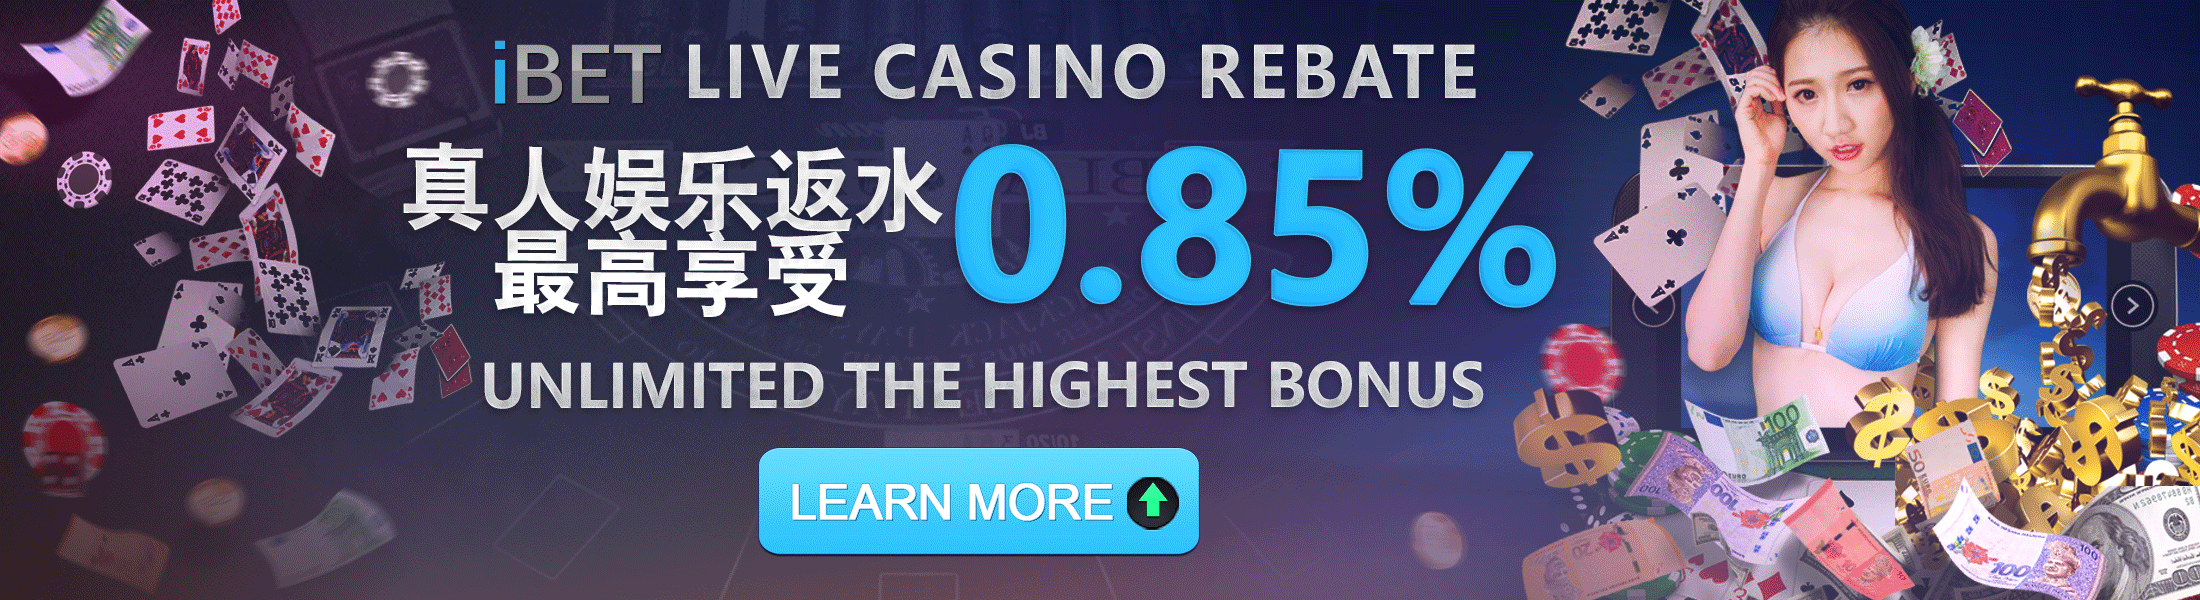 CNY Live Casino Cashback 0.75%+0.1% Damacai 4D